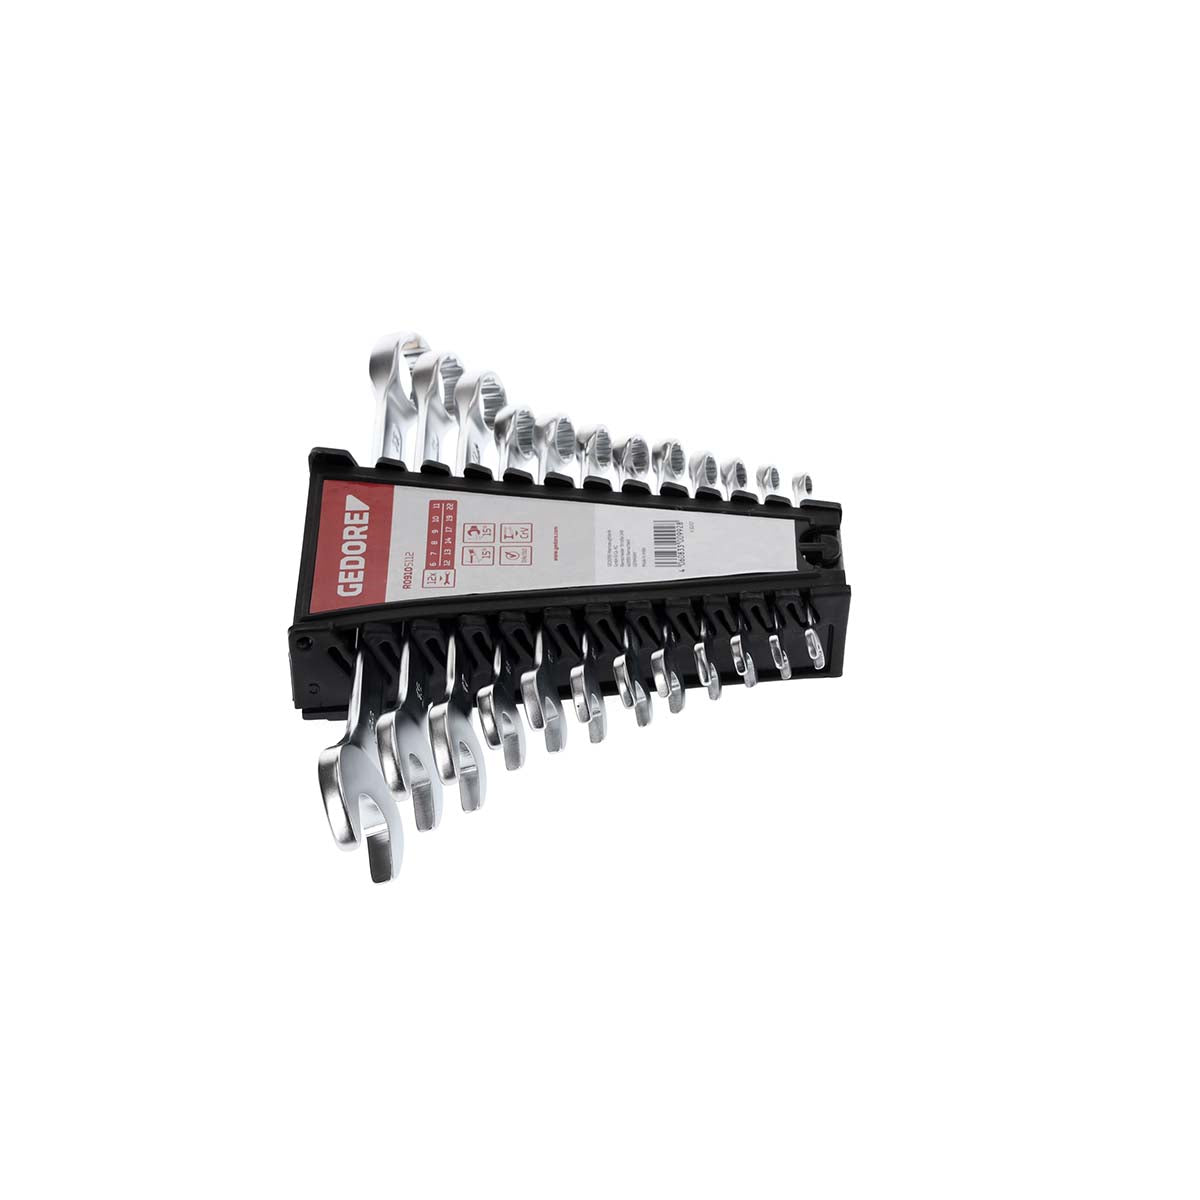 GEDORE rouge R09105112 - Jeu de clés mixtes, 6-22 mm, 12 pièces (3300992)